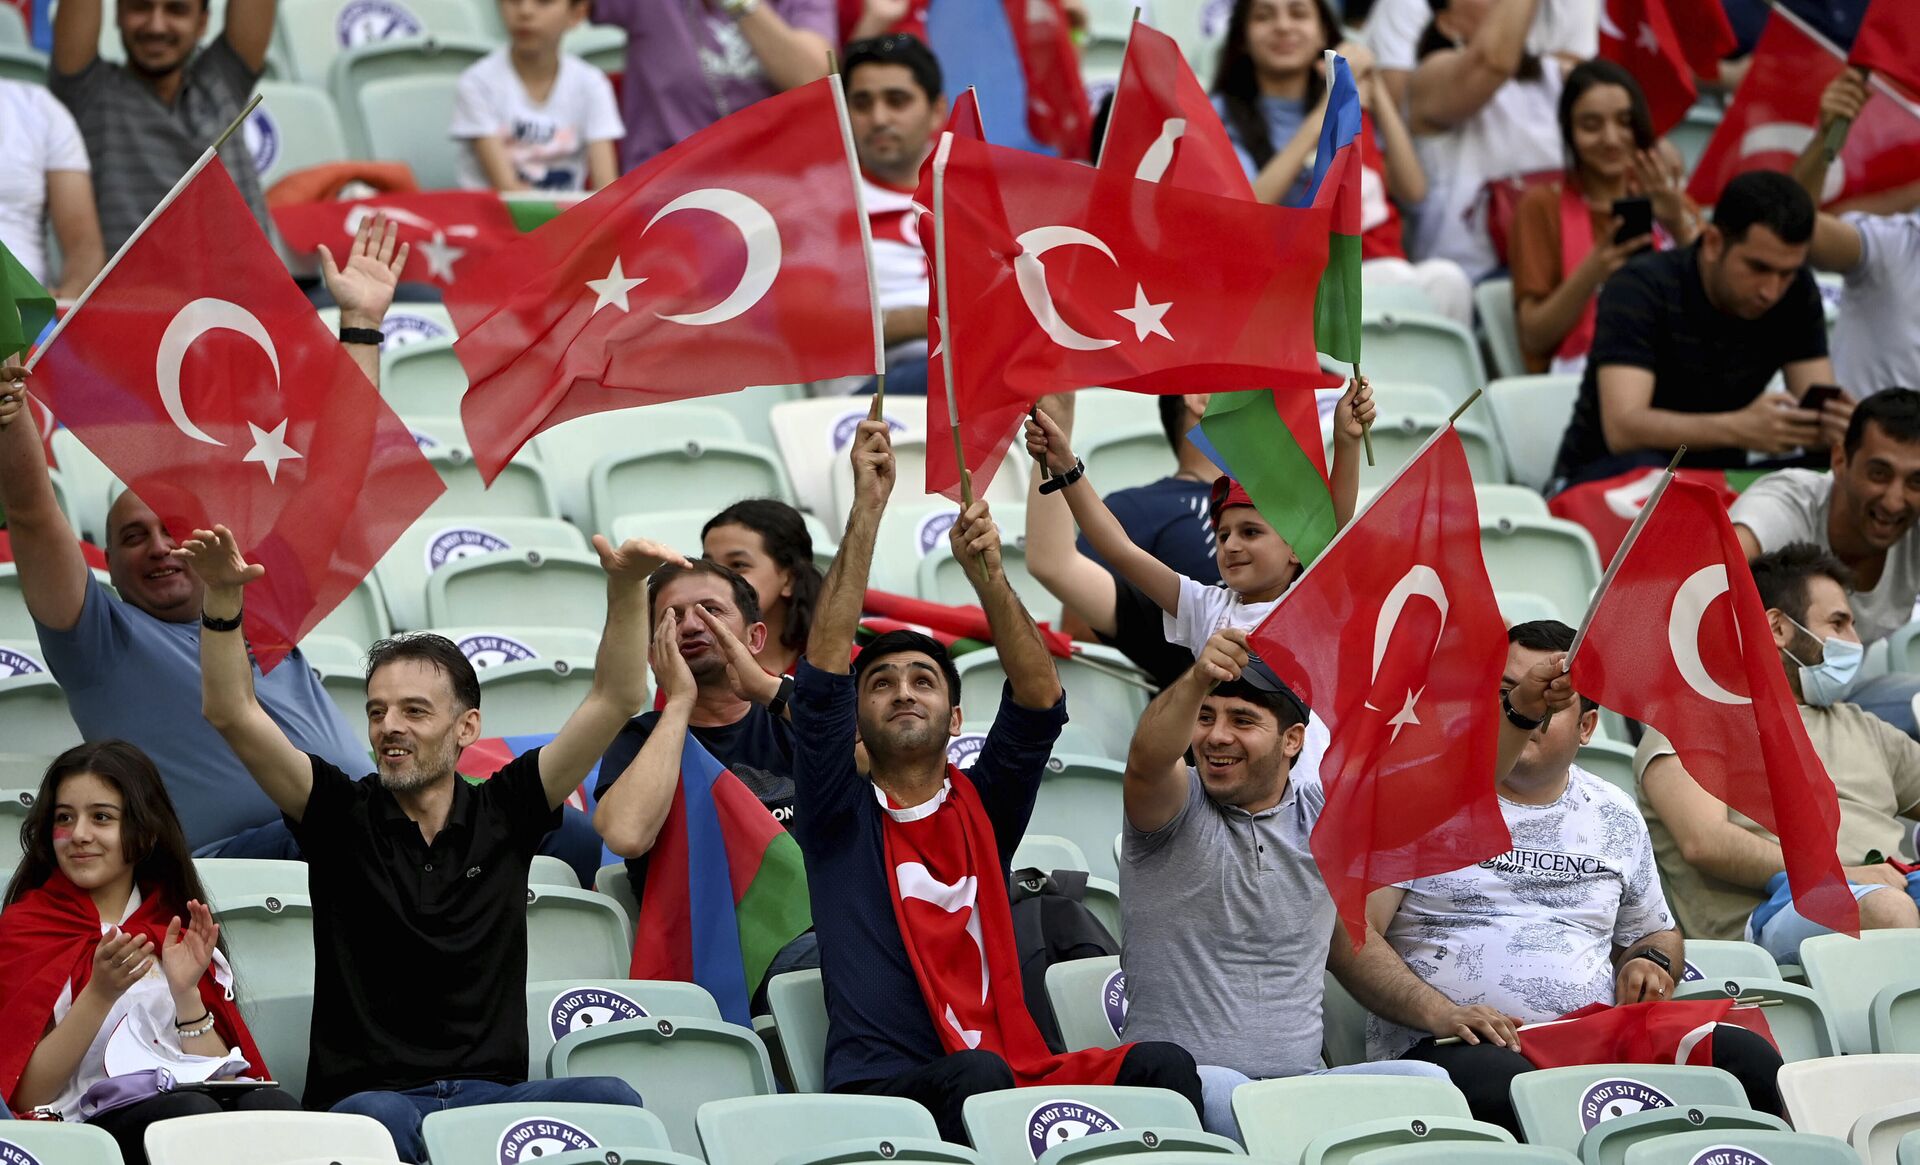 Đội tuyển Thụy Sĩ thắng đội tuyển Thổ Nhĩ Kỳ trong vòng bảng EURO 2020 với tỷ số 3:1 - Sputnik Việt Nam, 1920, 21.06.2021